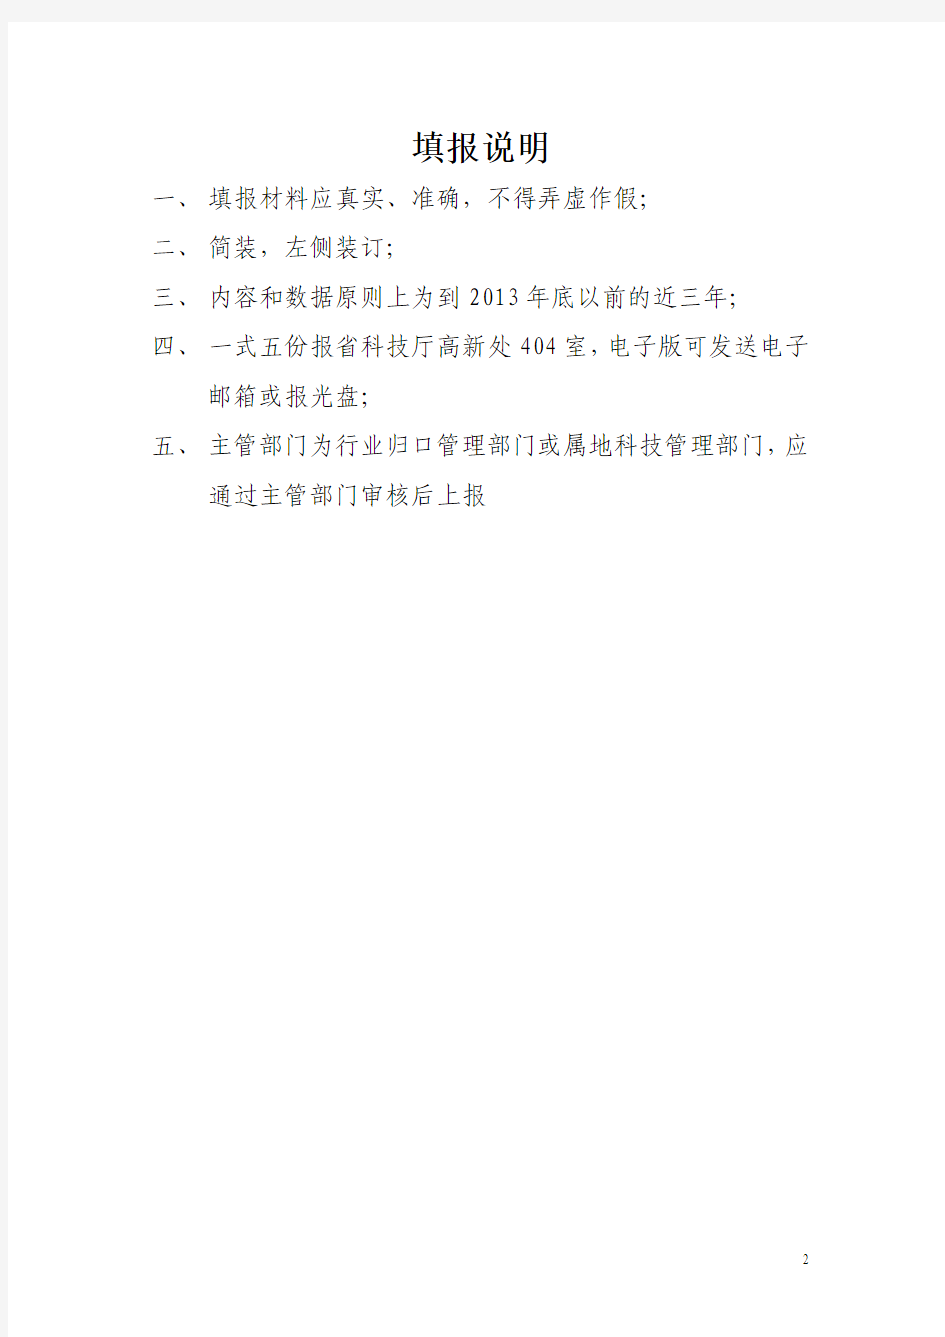 四川省工程技术研究中心自查报告编写格式